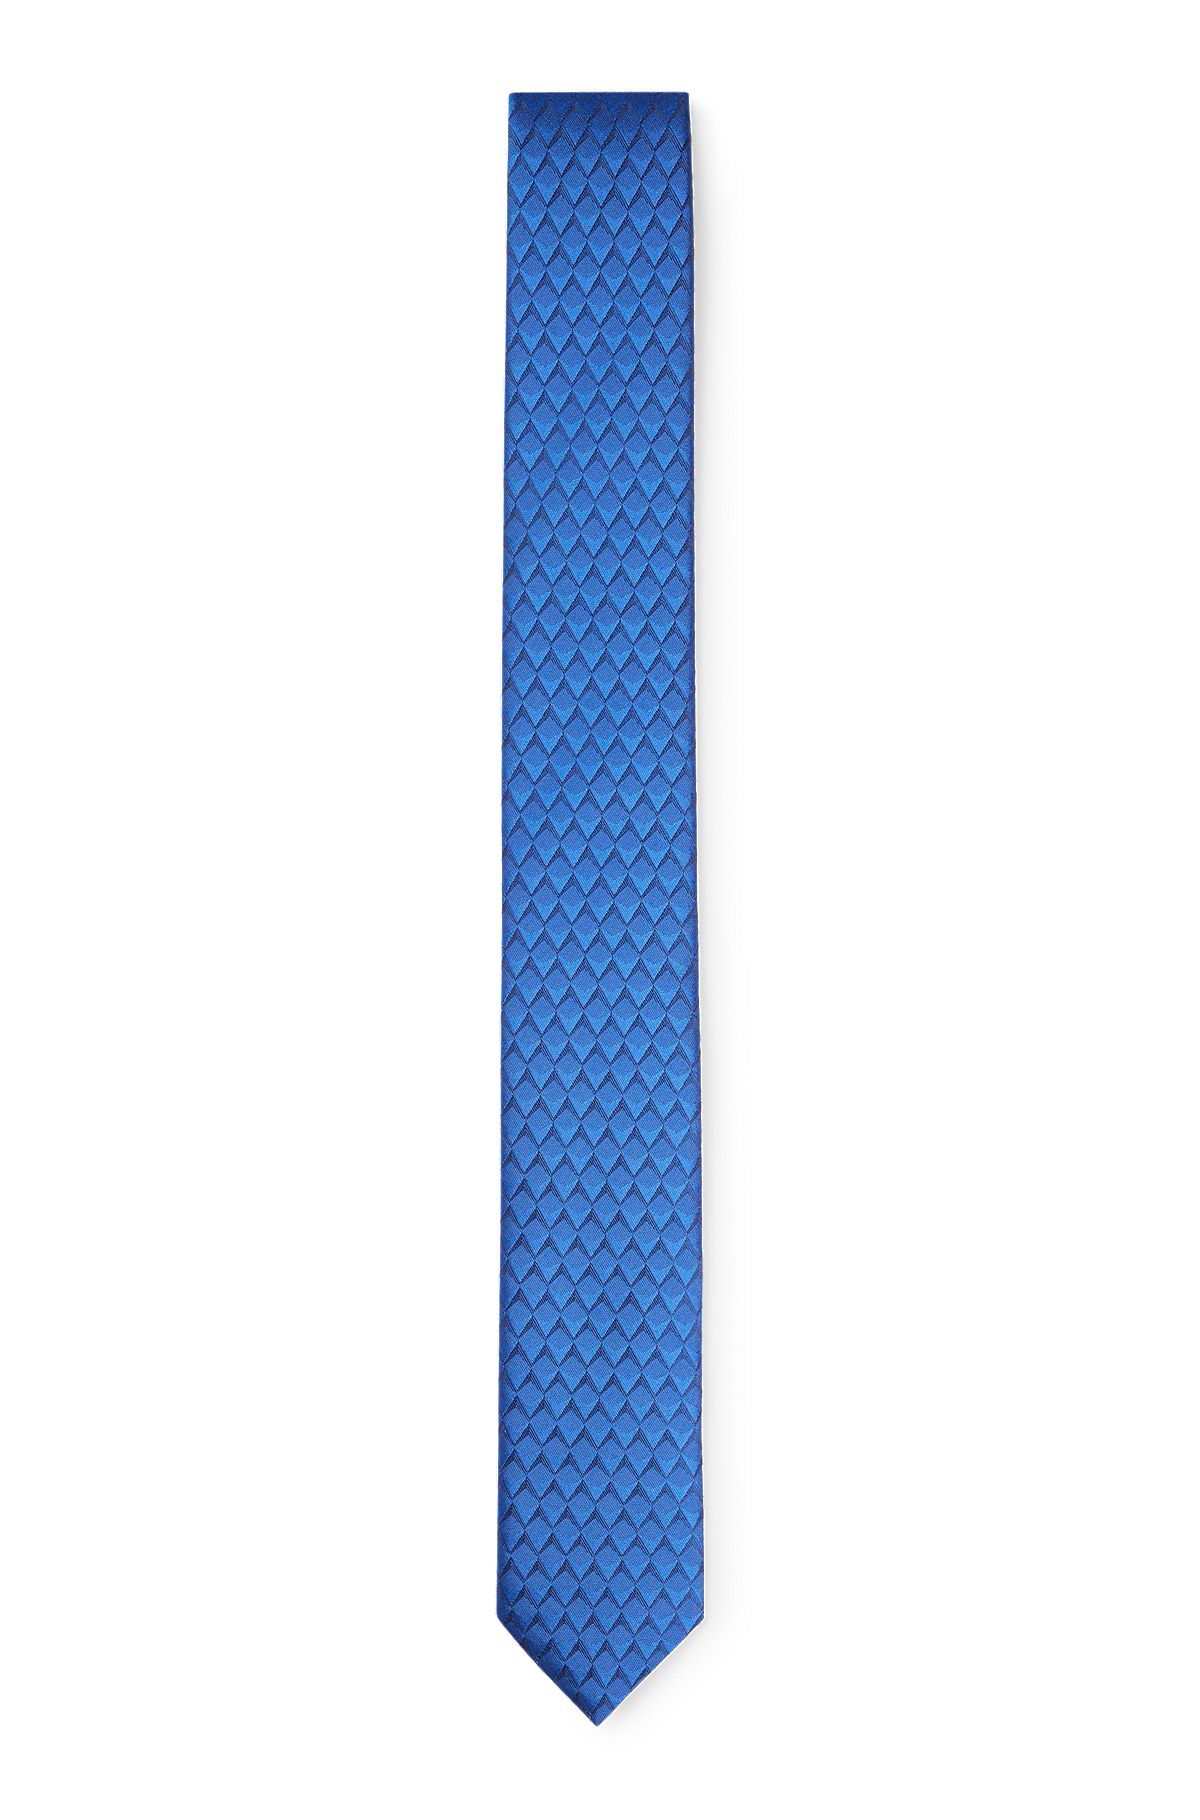 Printed-pattern tie in silk jacquard, Blue